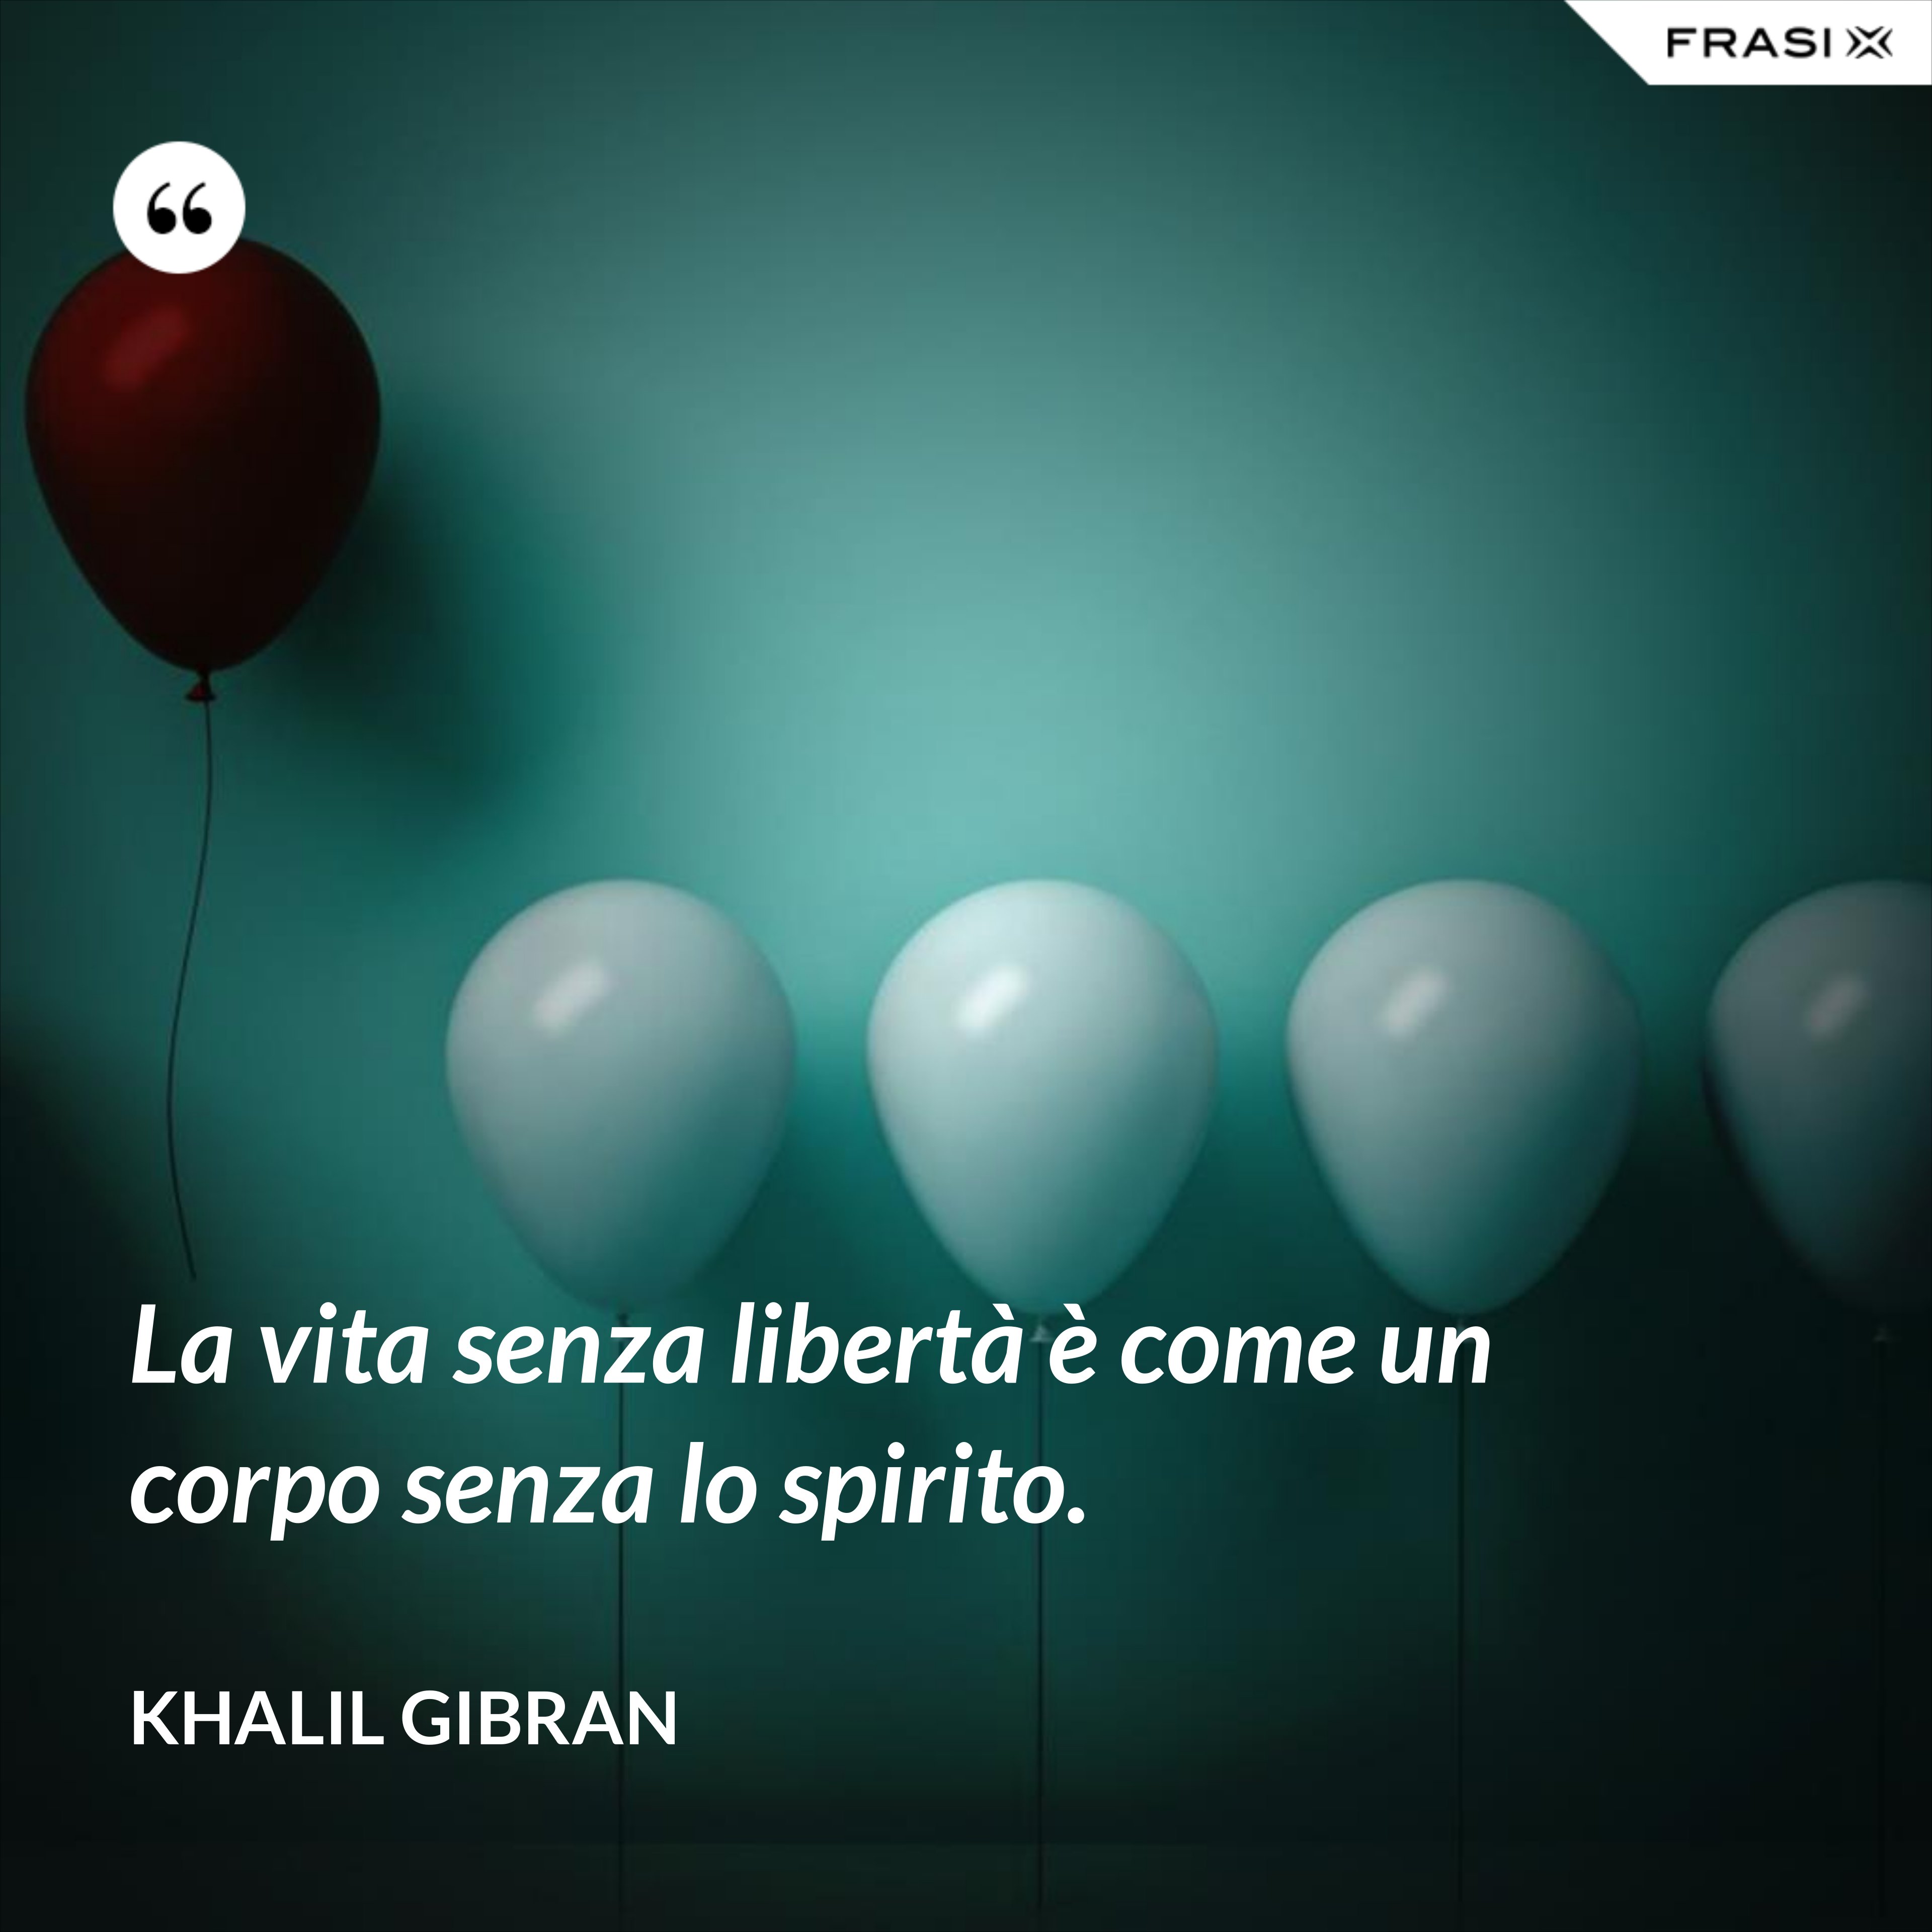 La vita senza libertà è come un corpo senza lo spirito. - Khalil Gibran